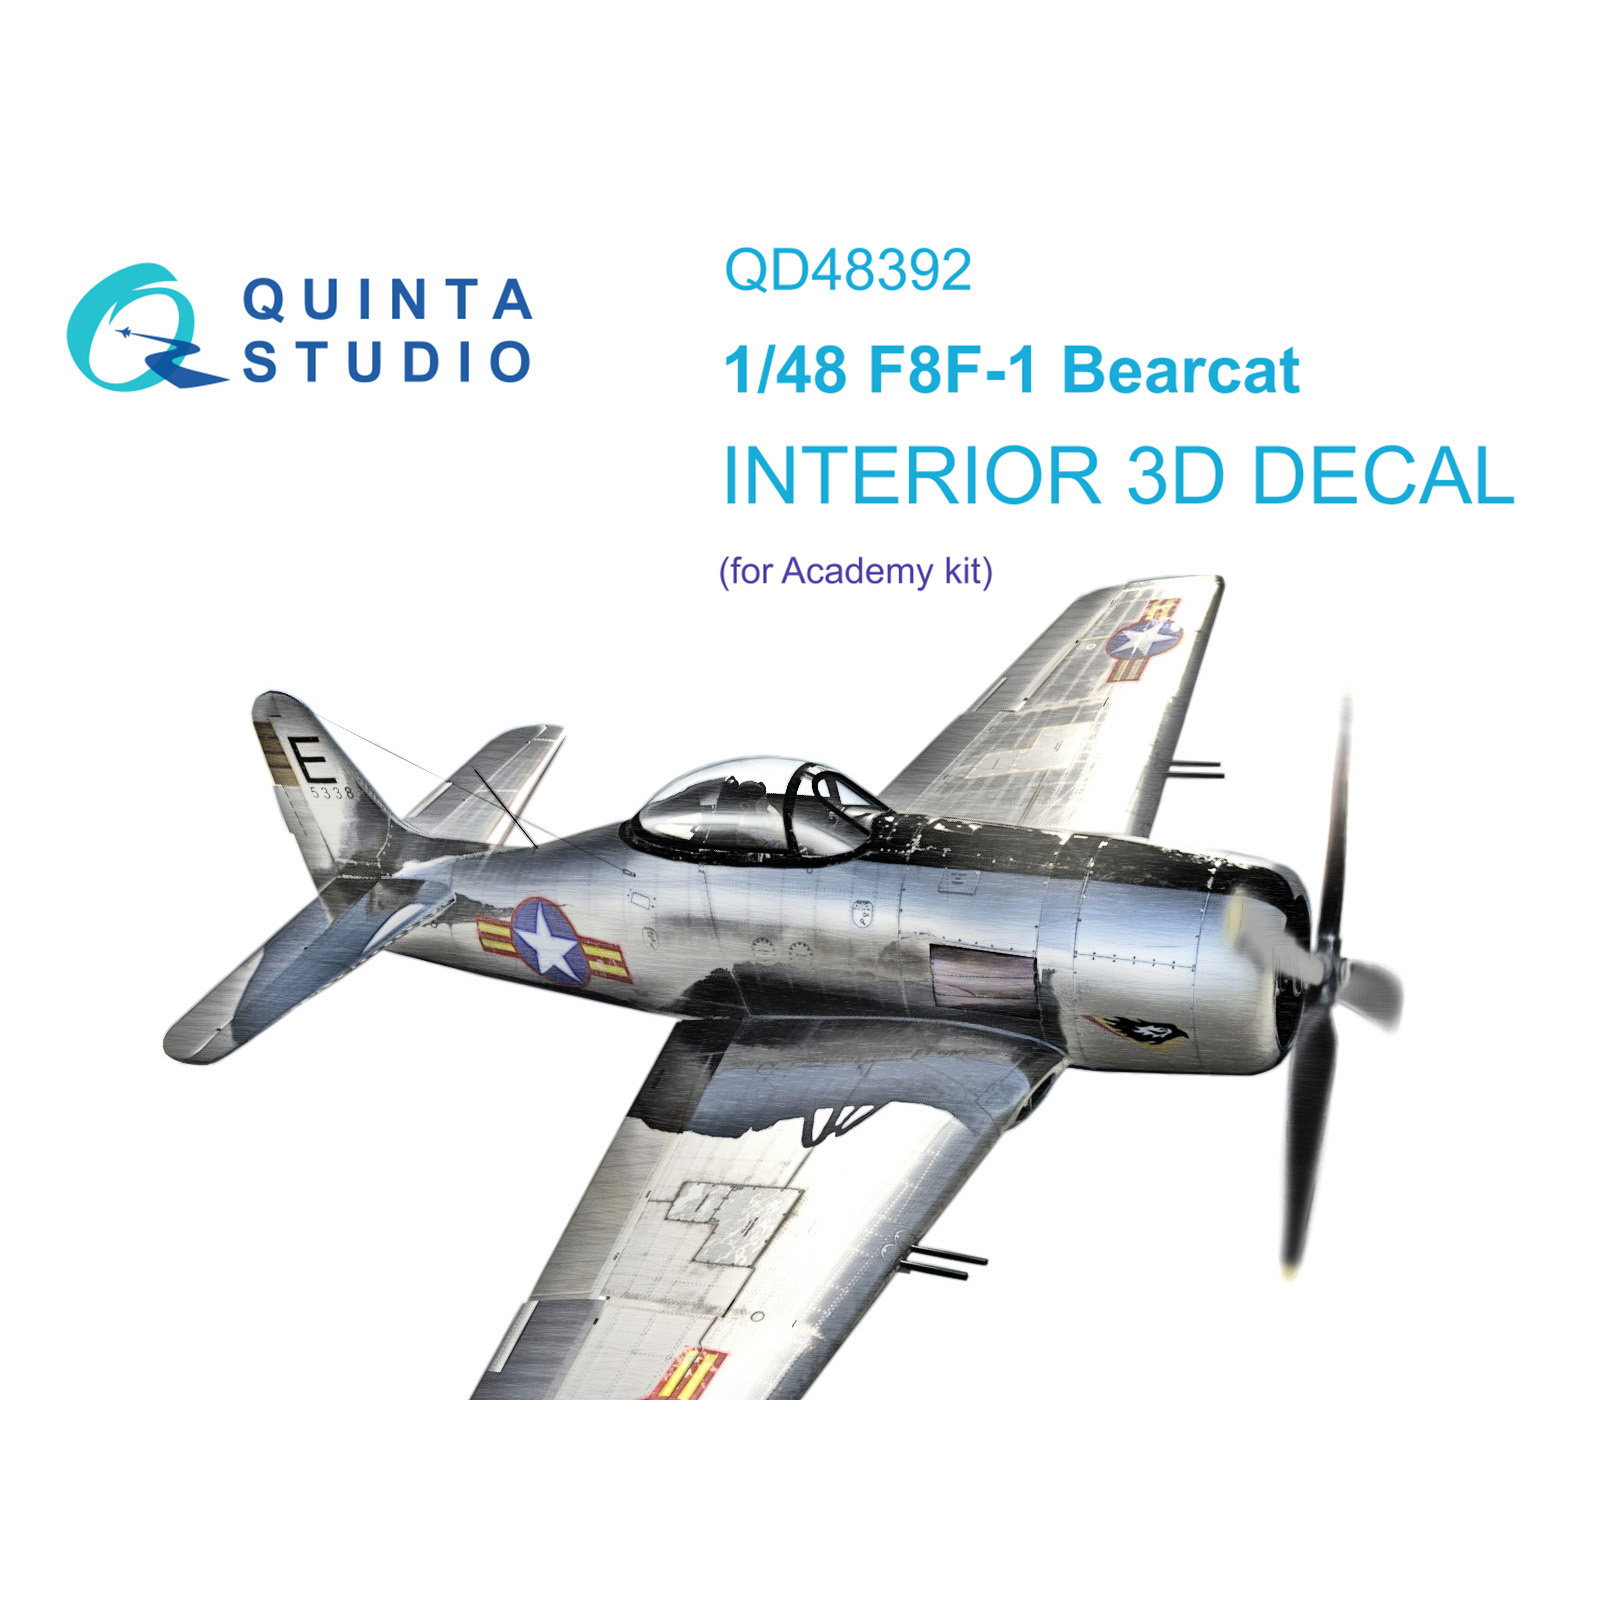 3D Декаль Quinta Studio интерьера кабины F8F-1 Bearcat QD48392